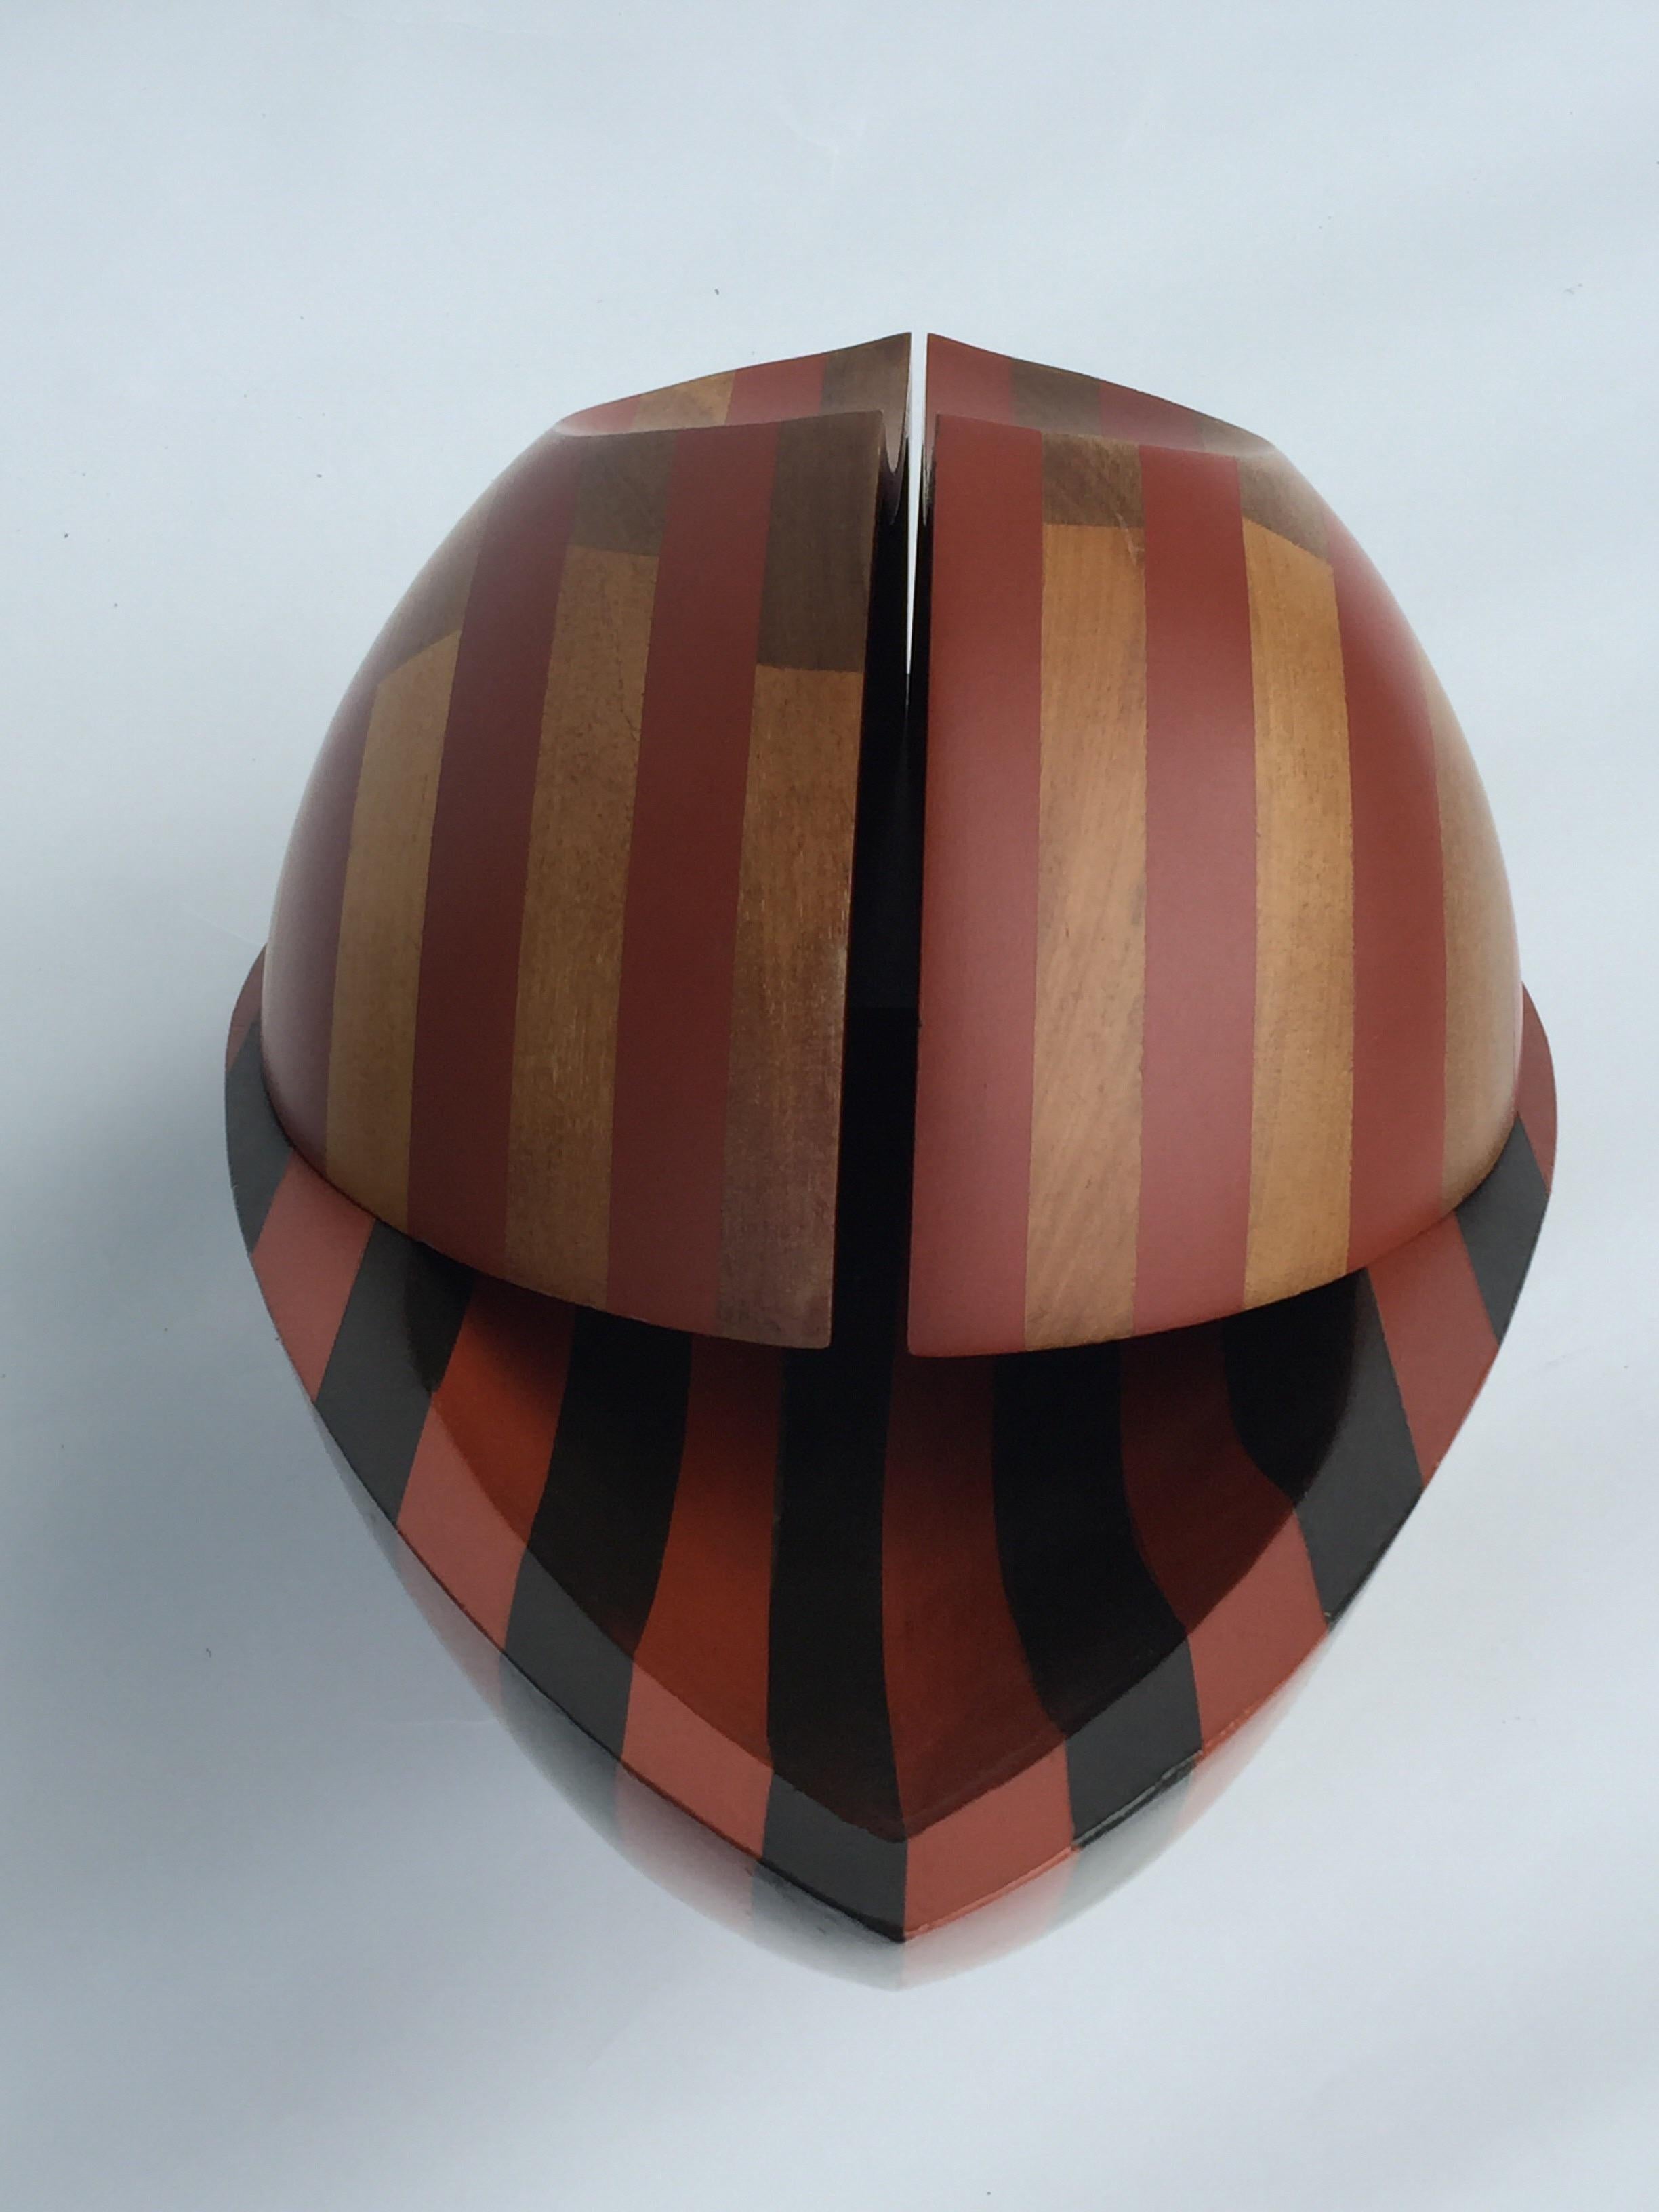 David E. Davis Organic Form Wooden Egg Sculpture 1